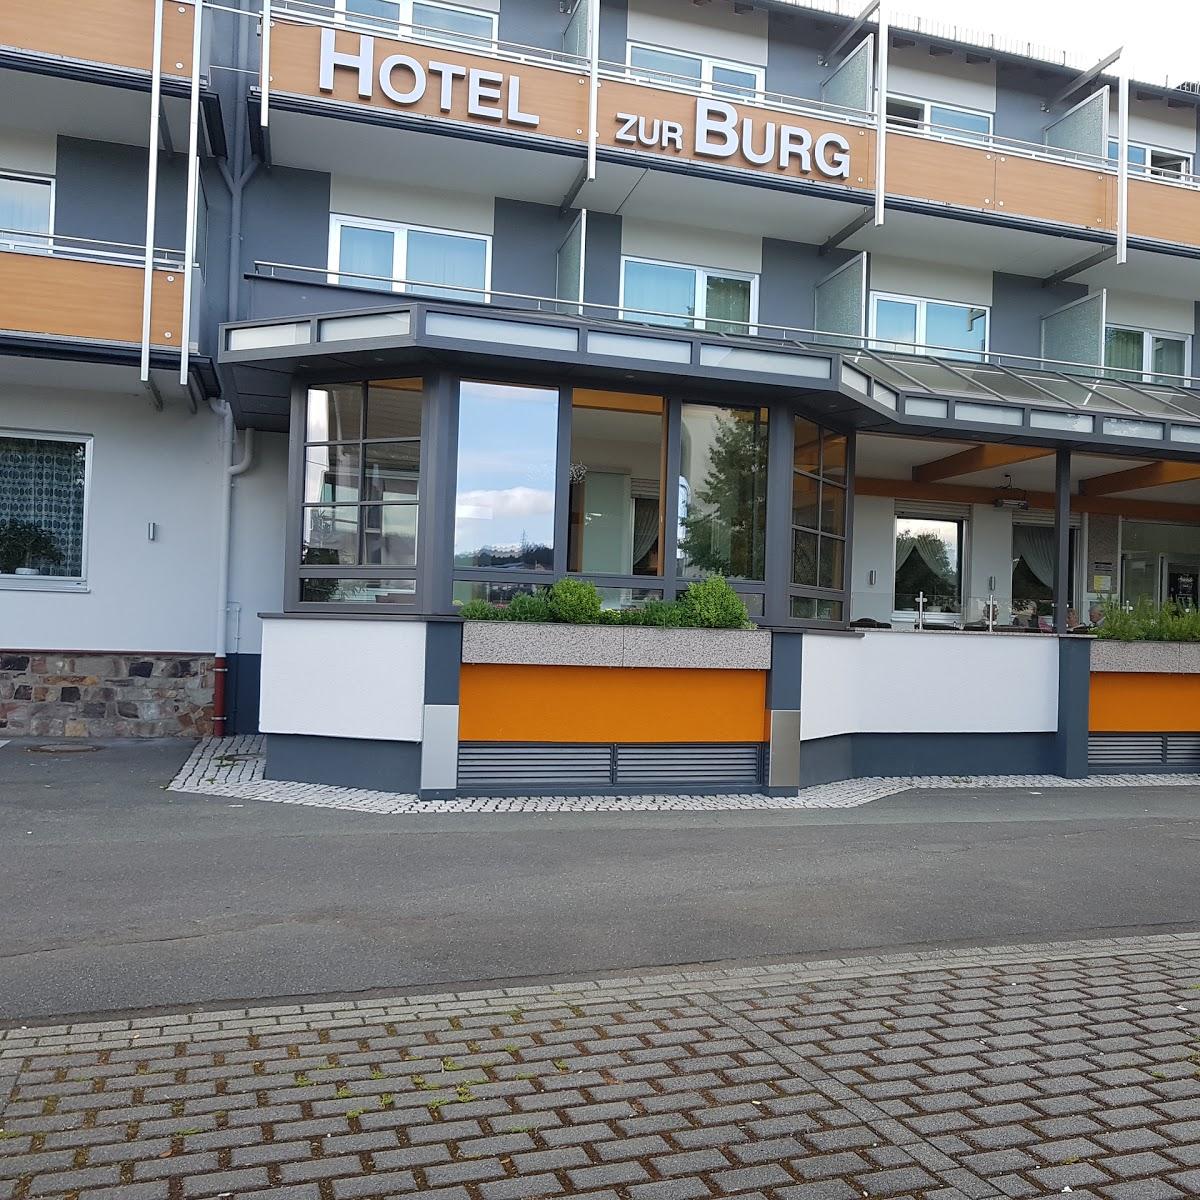 Restaurant "Hotel Zur Burg" in  Taunusstein